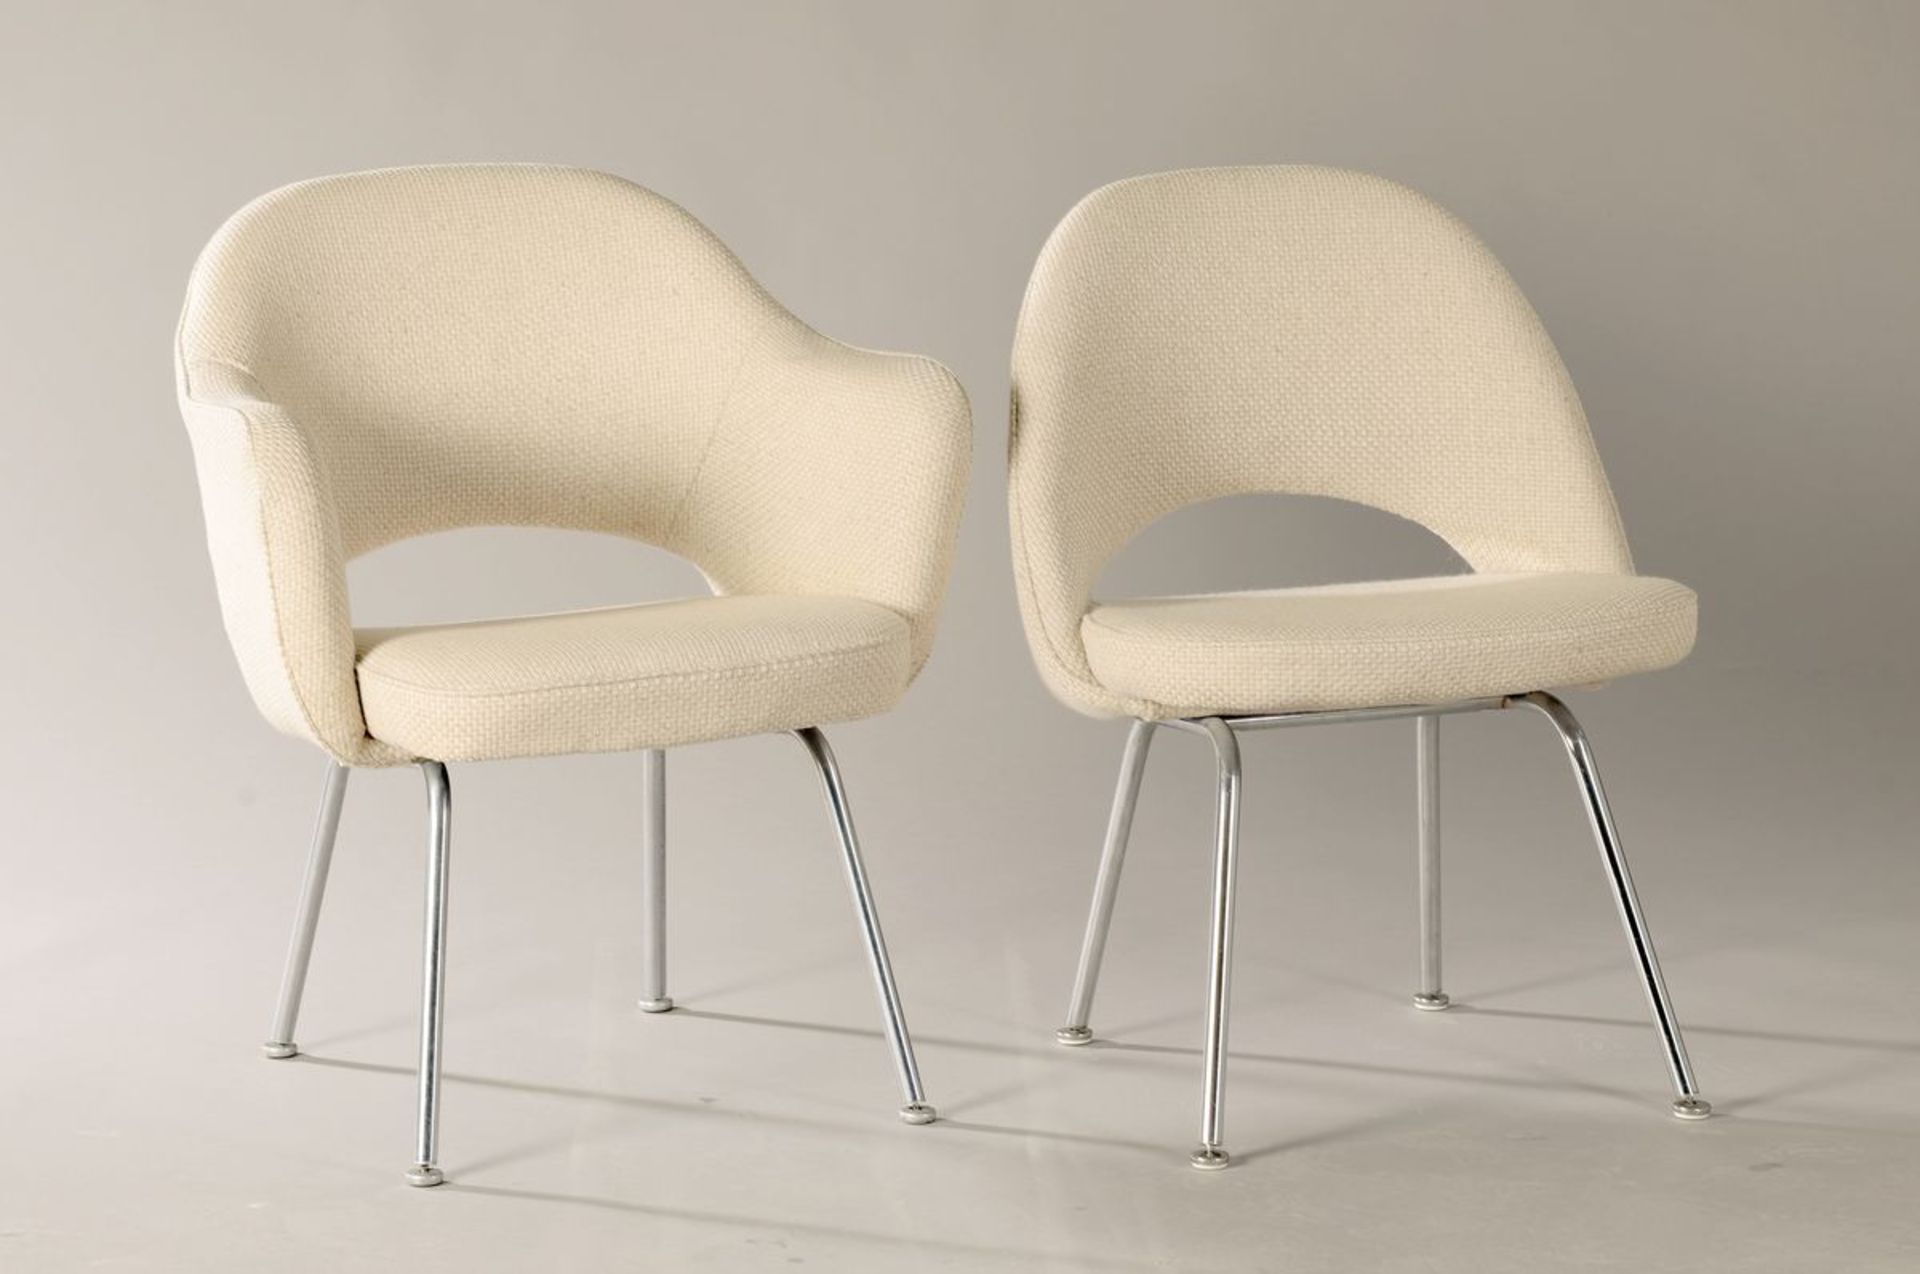 Designer-Stühle, 60er Jahre, 4 Armlehnstühle und 2 Stühle